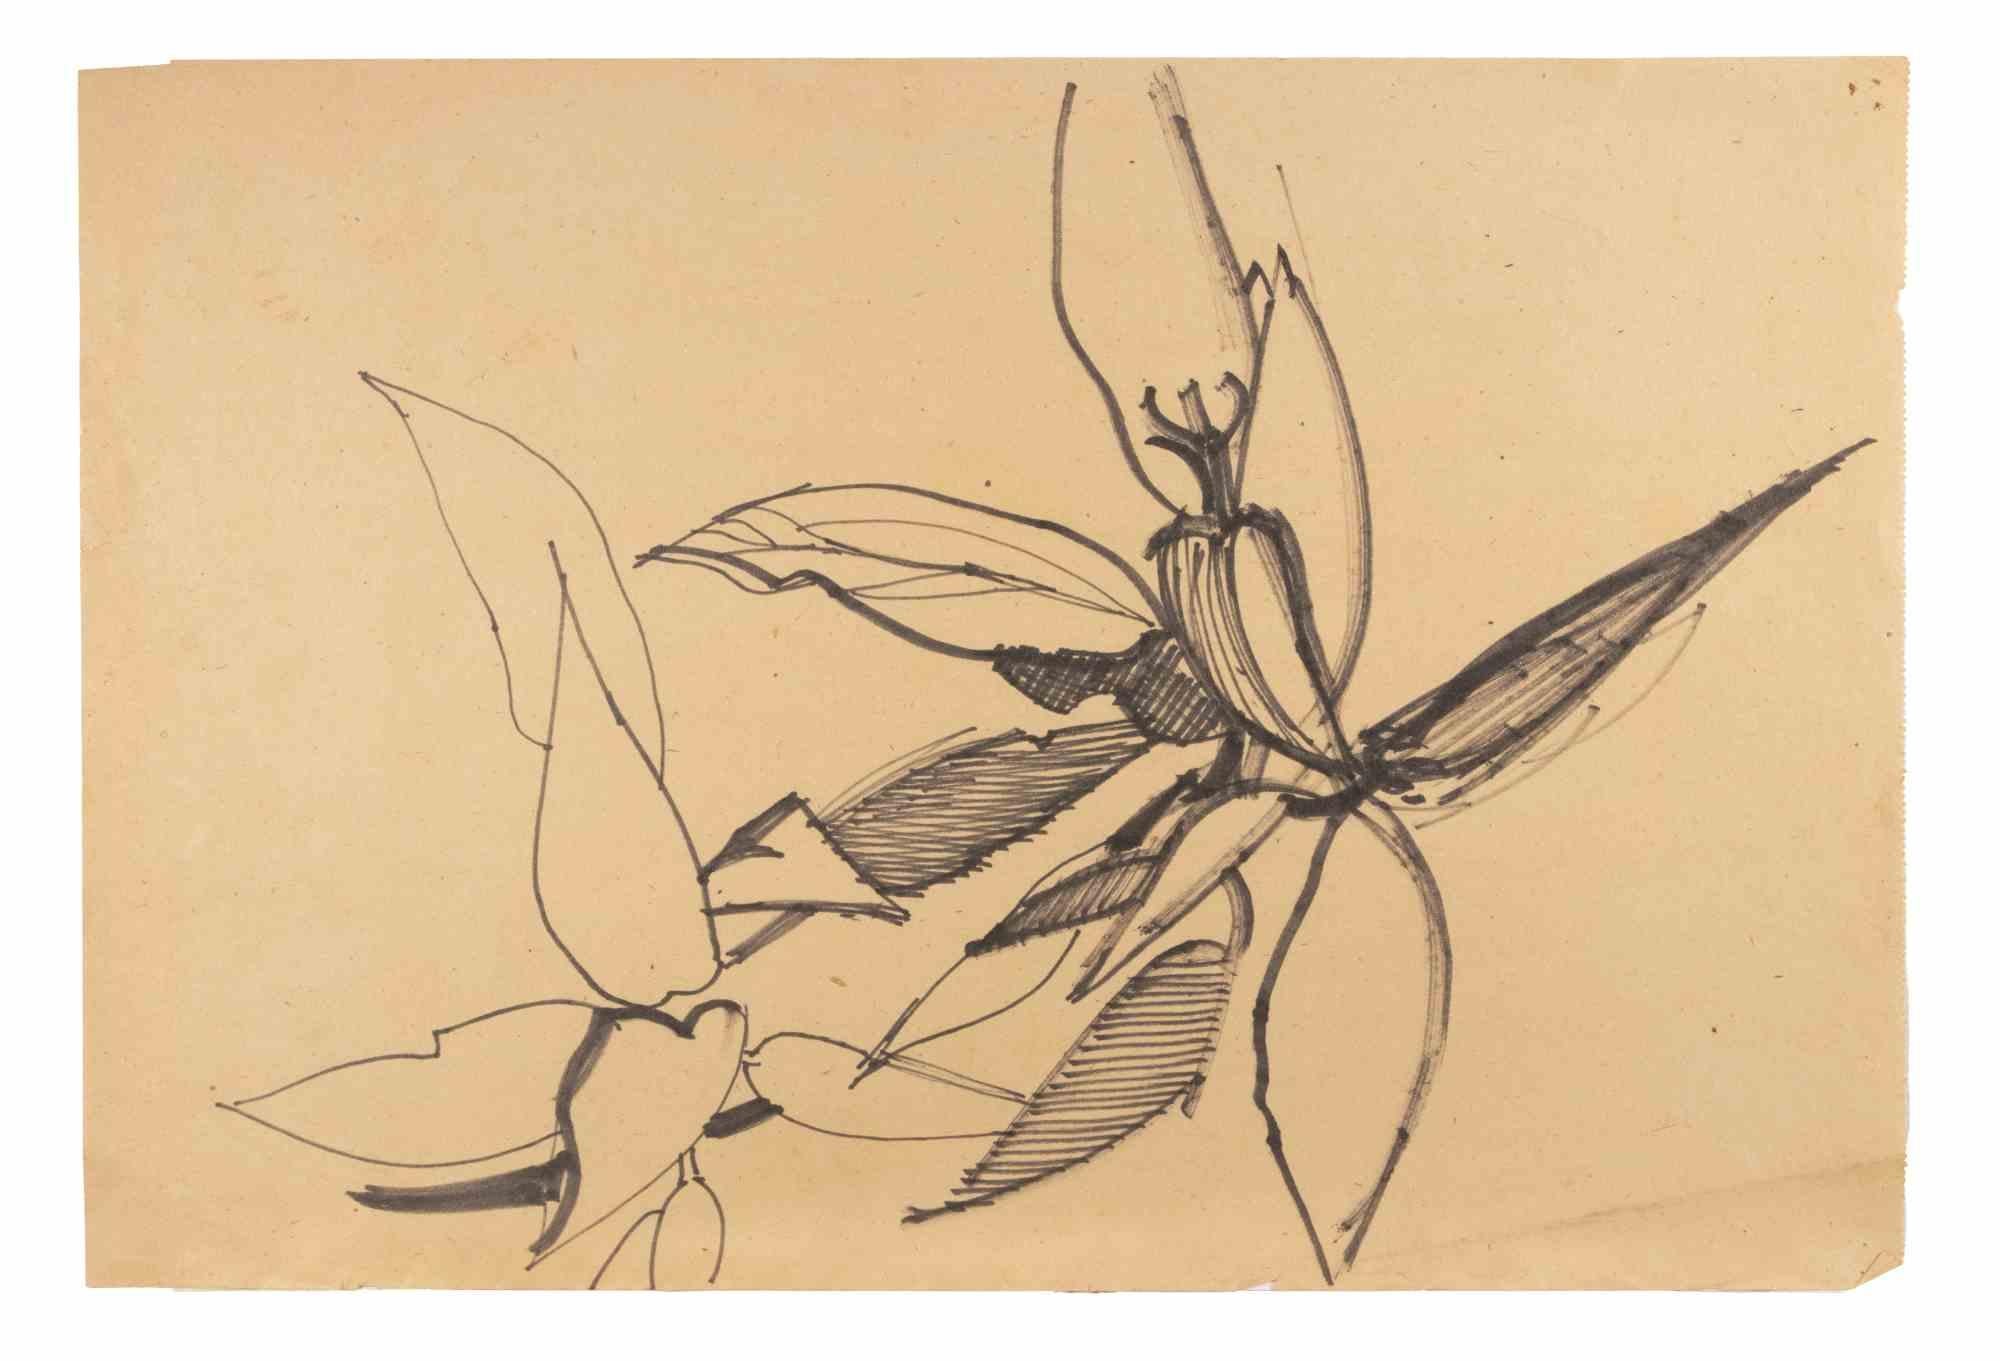 Blumen ist eine Black Marker Zeichnung realisiert von  Reynold Arnould  (Le Havre 1919 - Parigi 1980).

Guter Zustand auf vergilbtem Papier.

Keine Unterschrift.

Reynold Arnould wurde 1919 in Le Havre, Frankreich, geboren. Er studierte an der École